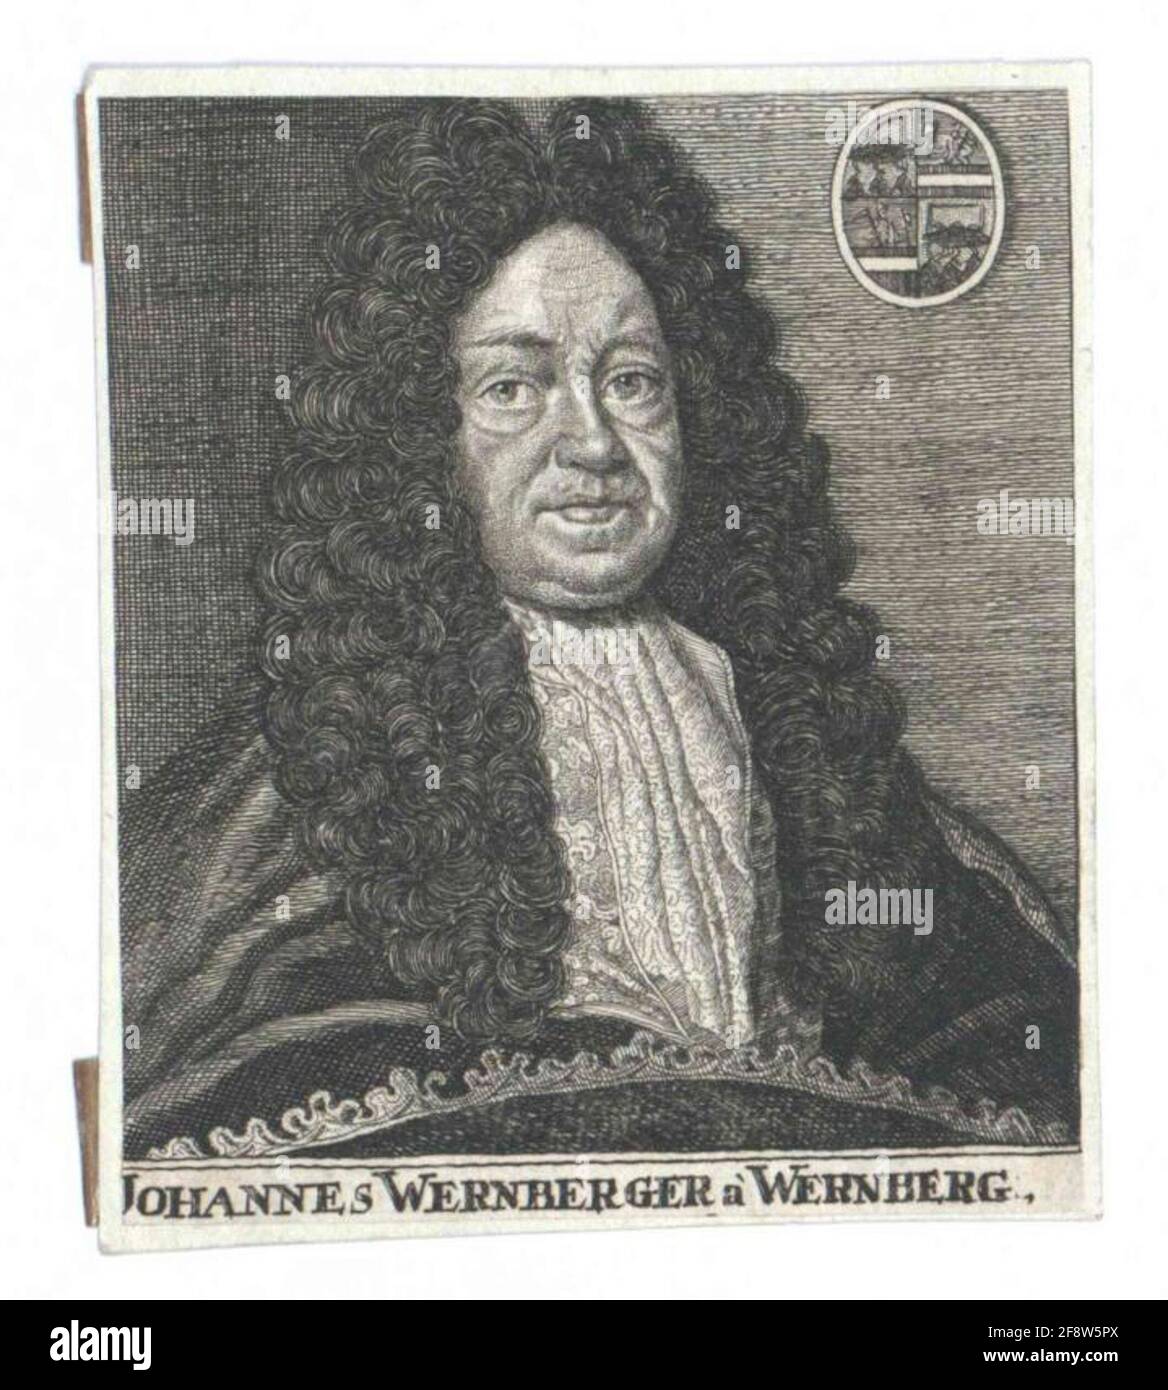 Wernberger von Wernberg, Johann. Stock Photo